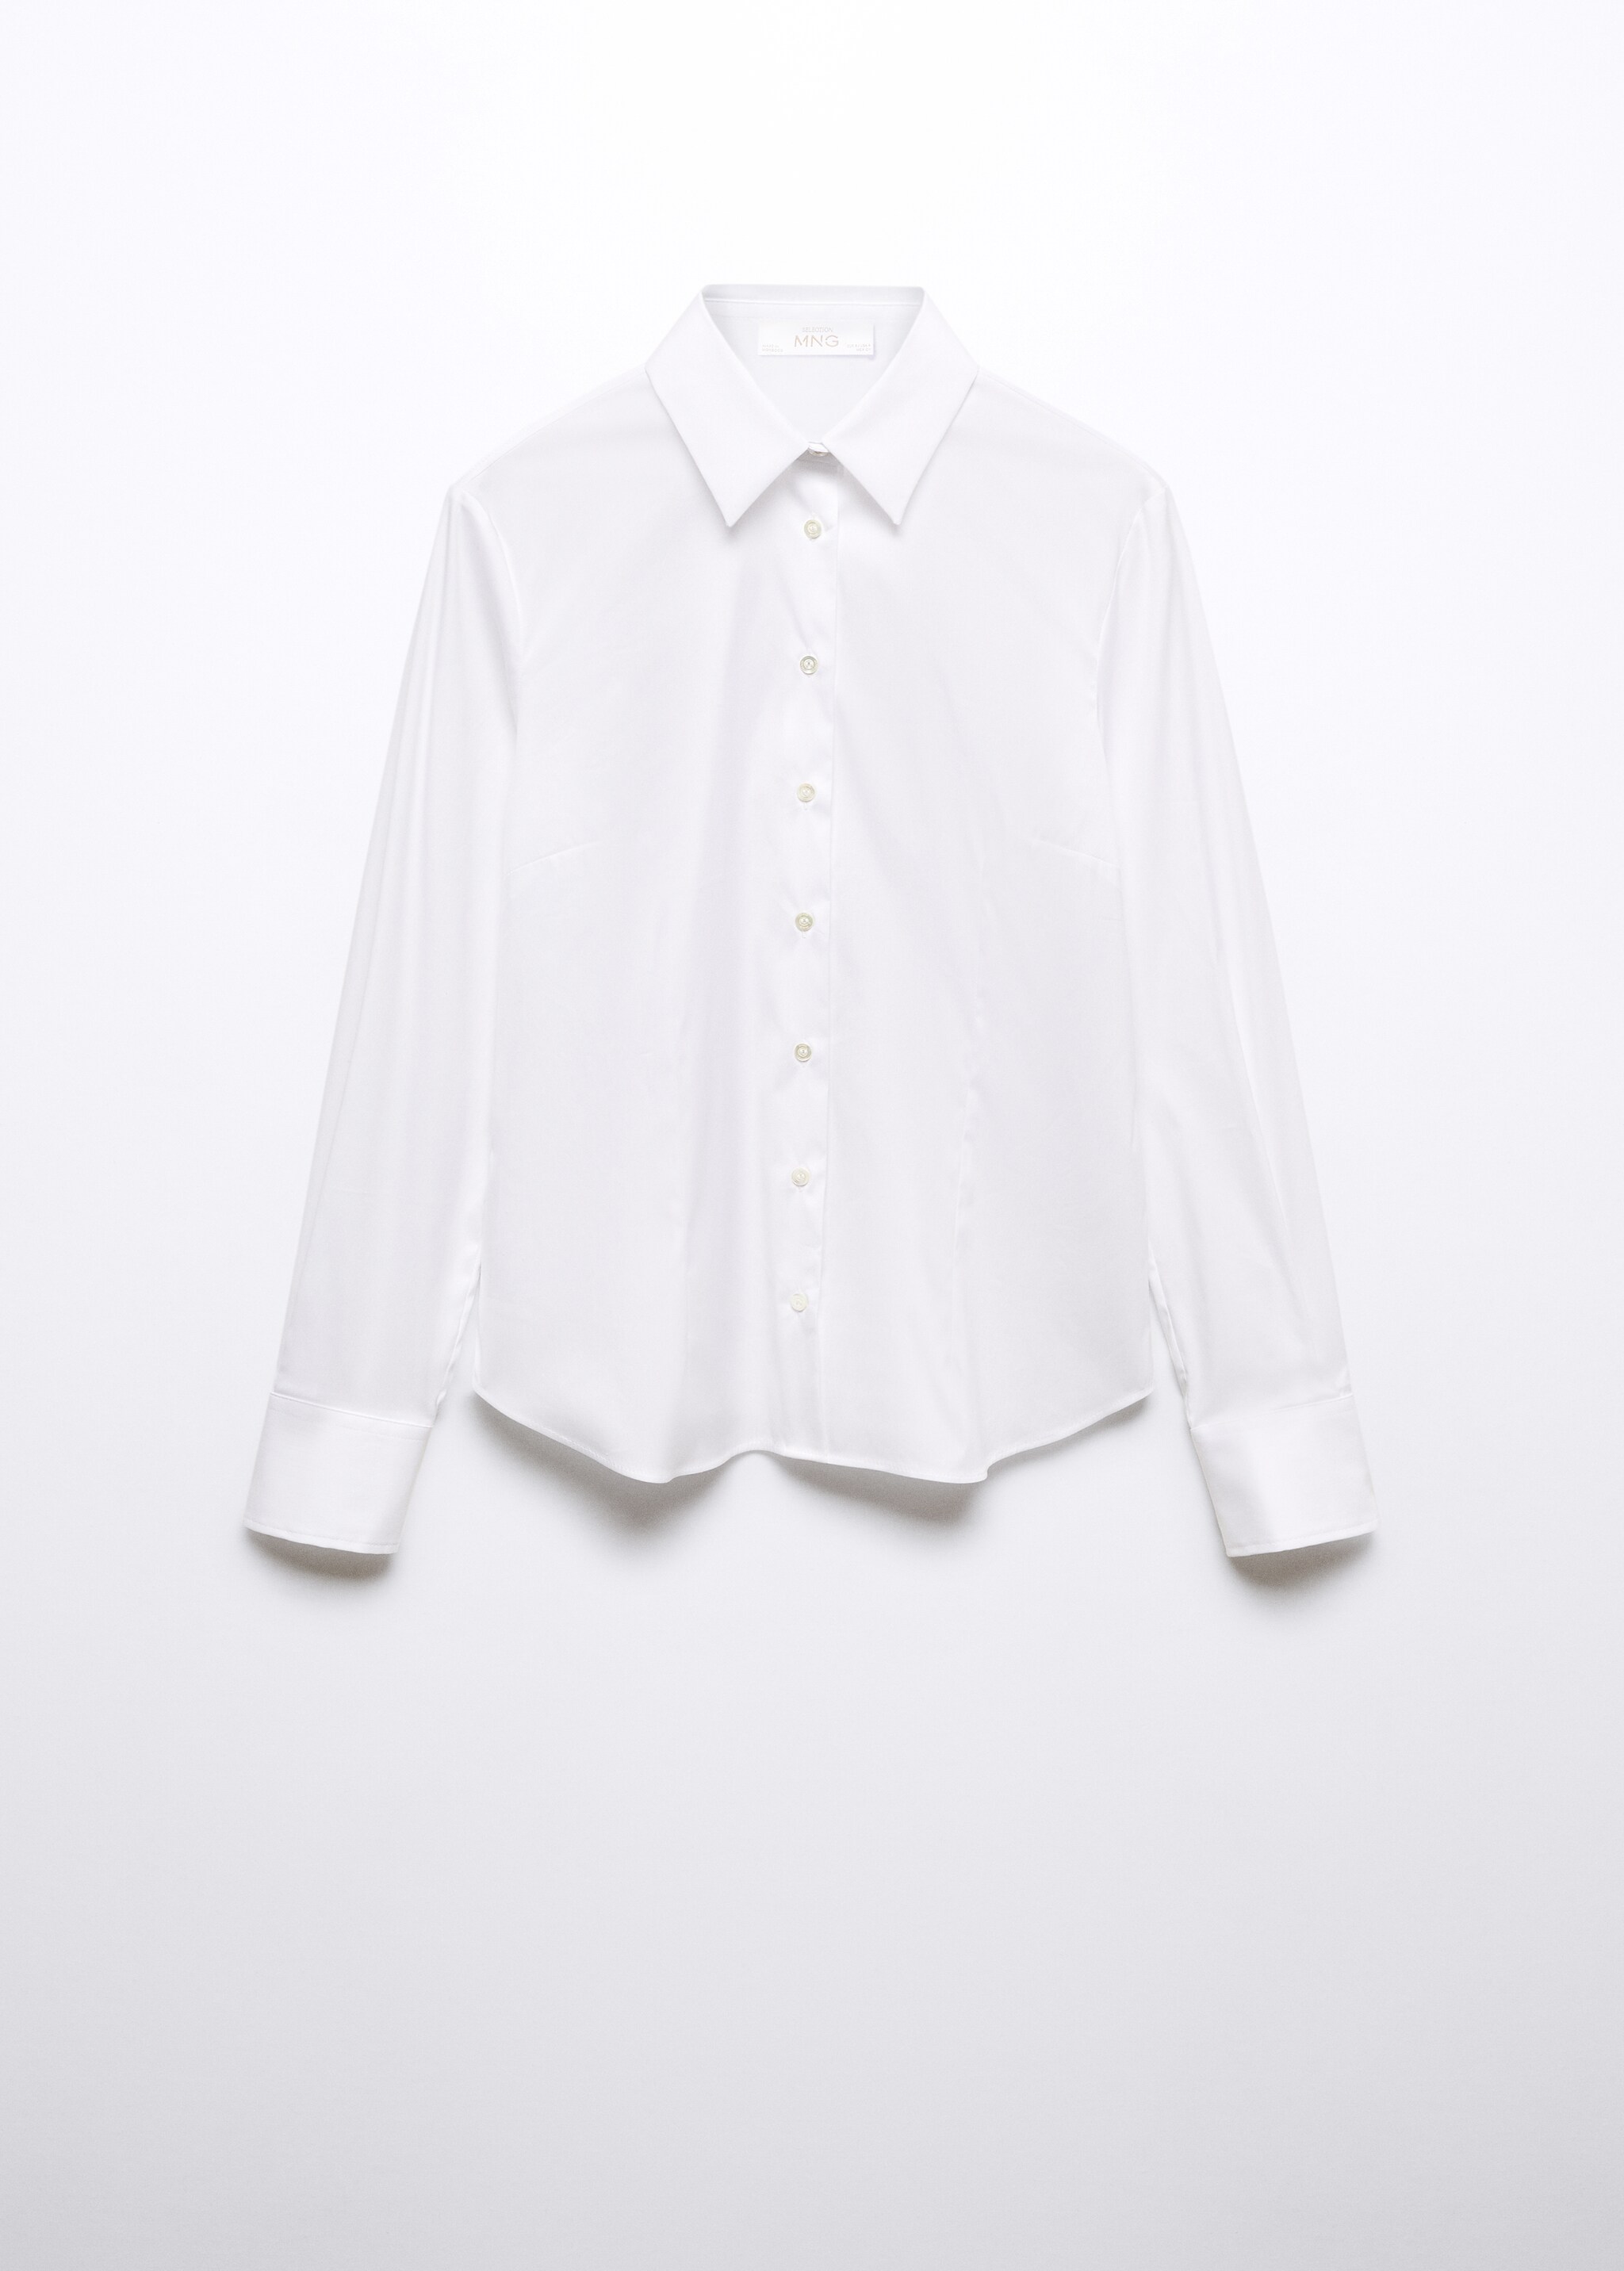 Camisa ajustada de algodão - Artigo sem modelo